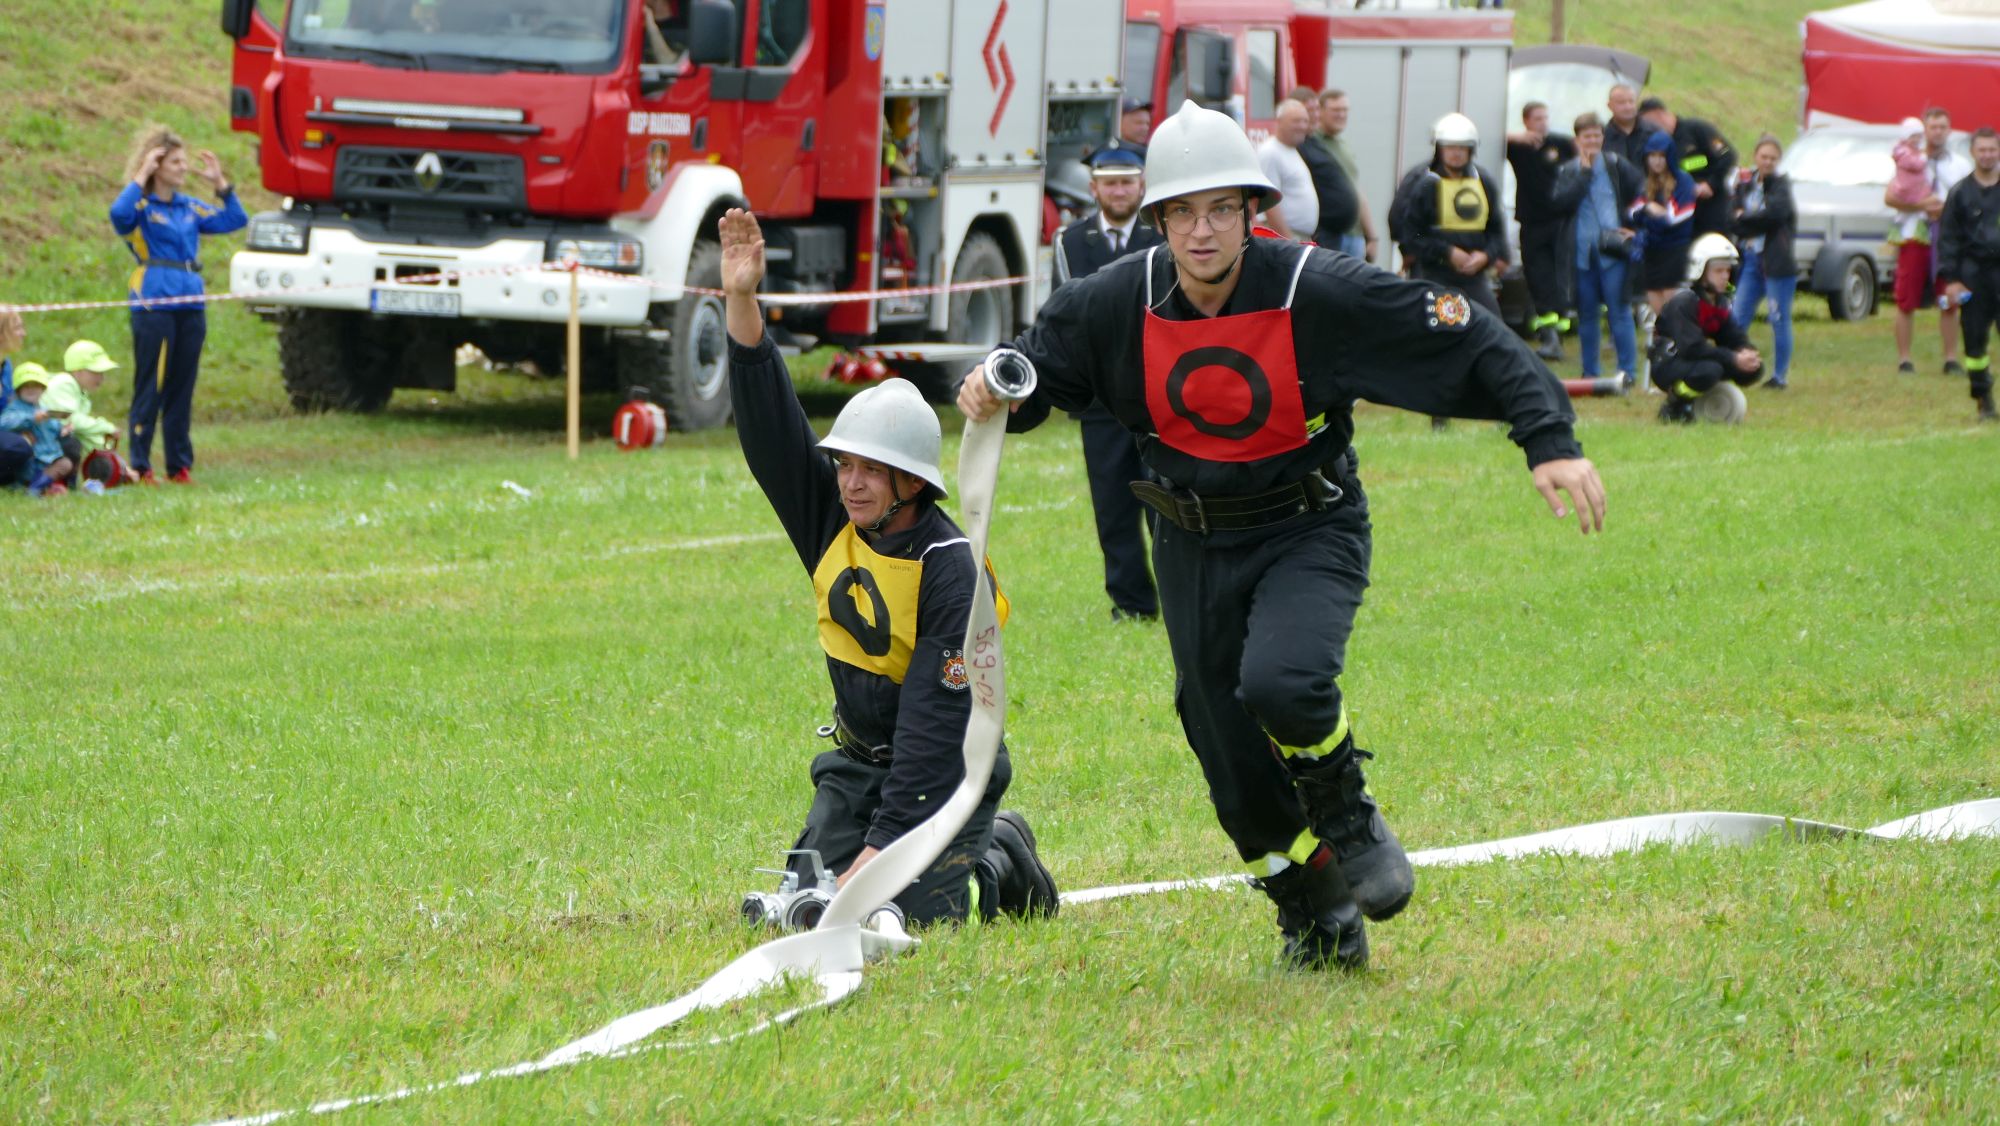 Zawody sportowo-pożarnicze składały się ze sztafety pożarniczej (400 m z przeszkodami – młodzież i 7x50 m z przeszkodami – seniorzy) oraz ćwiczeń bojowych